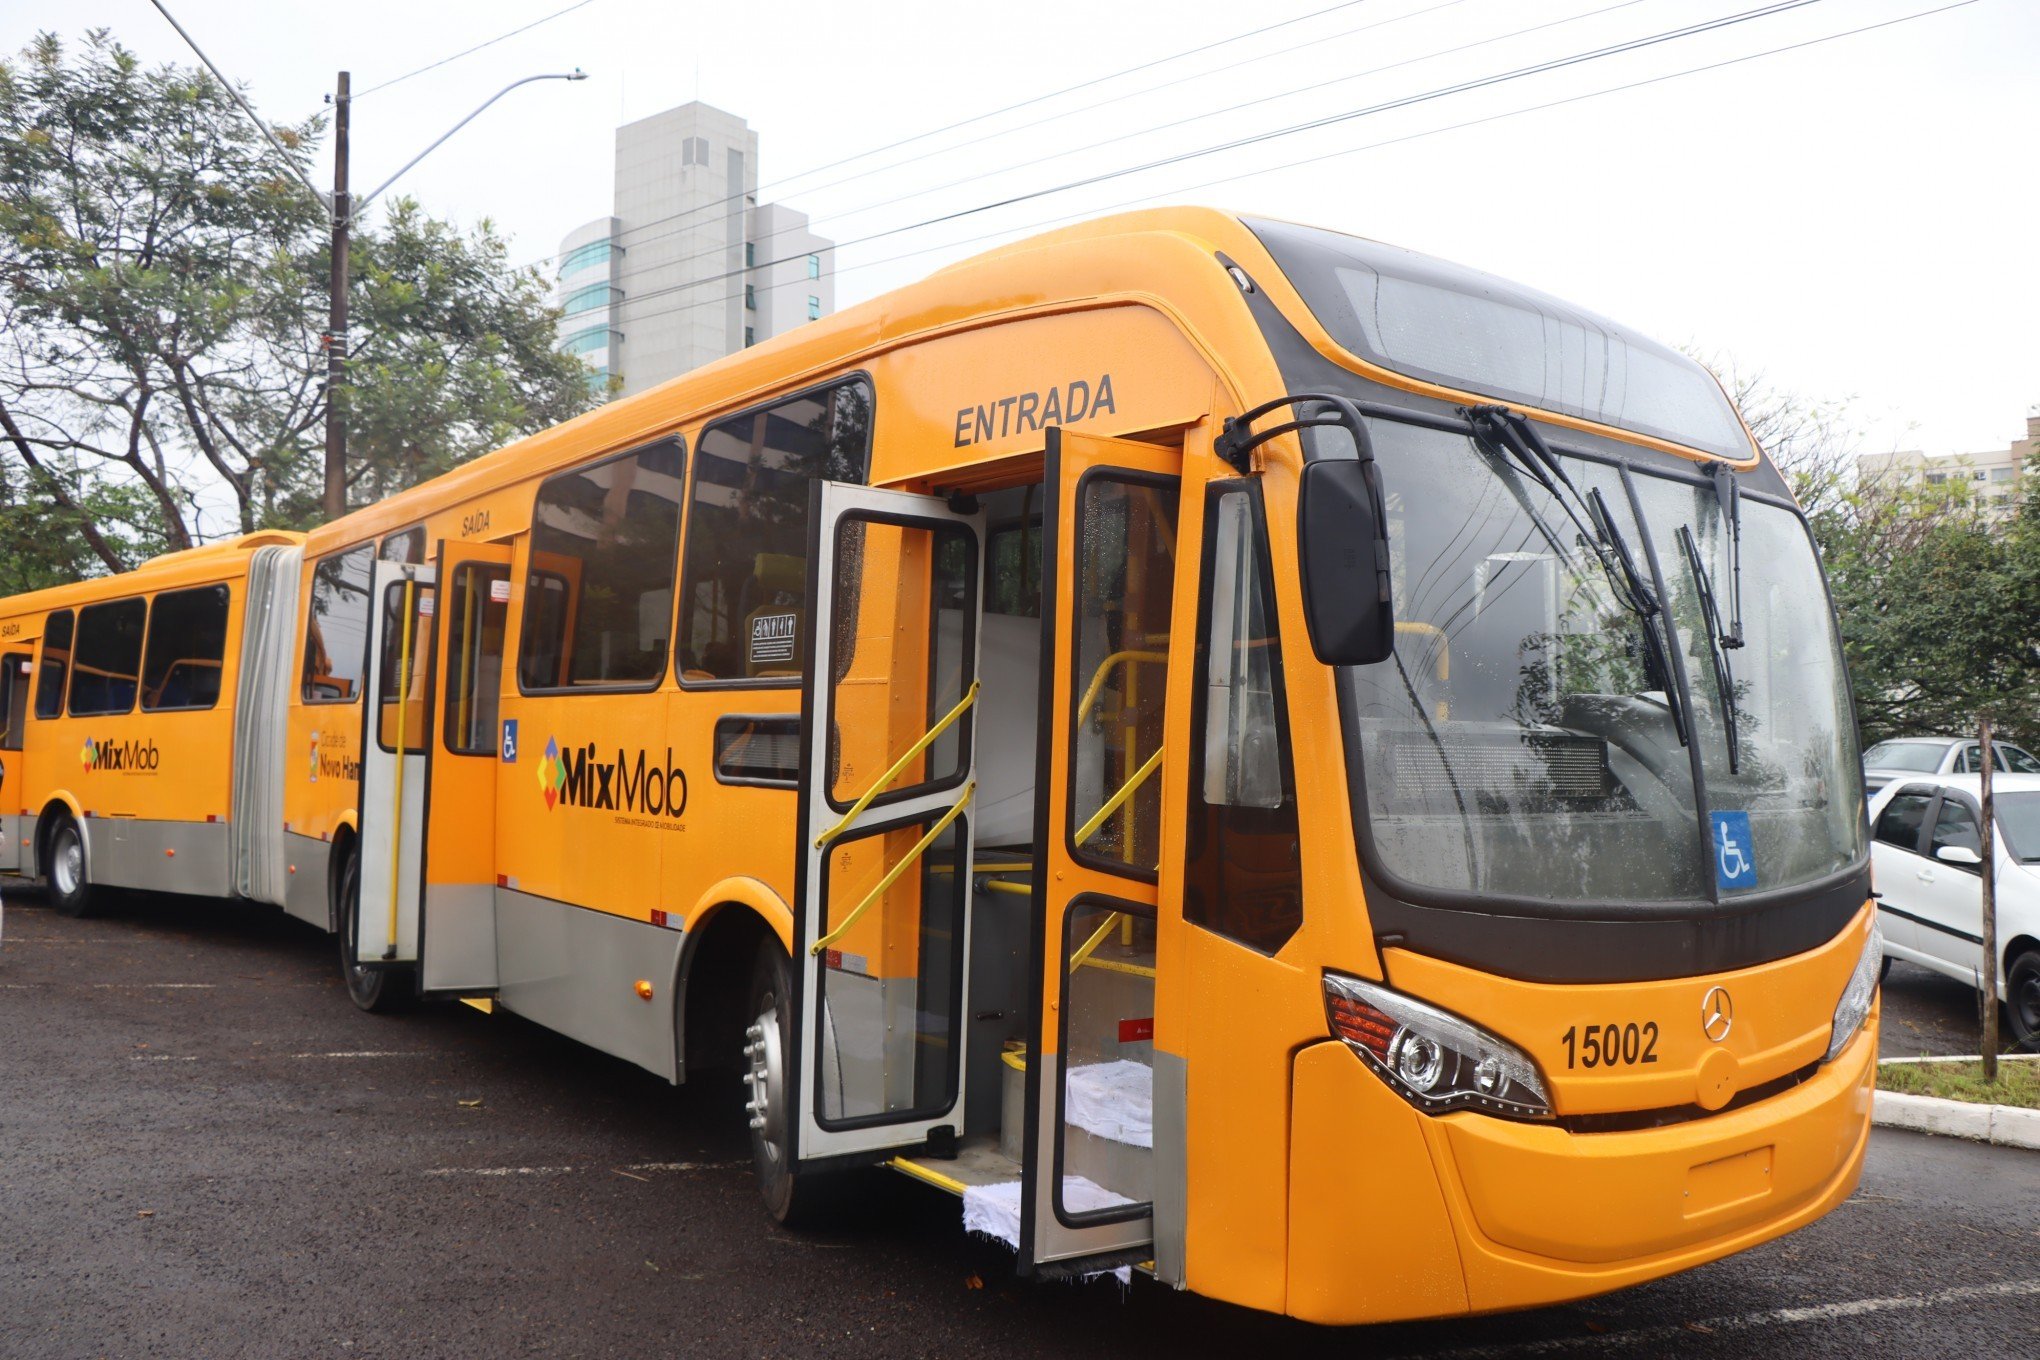 NOVO HAMBURGO: Conheça a nova frota de ônibus do transporte público